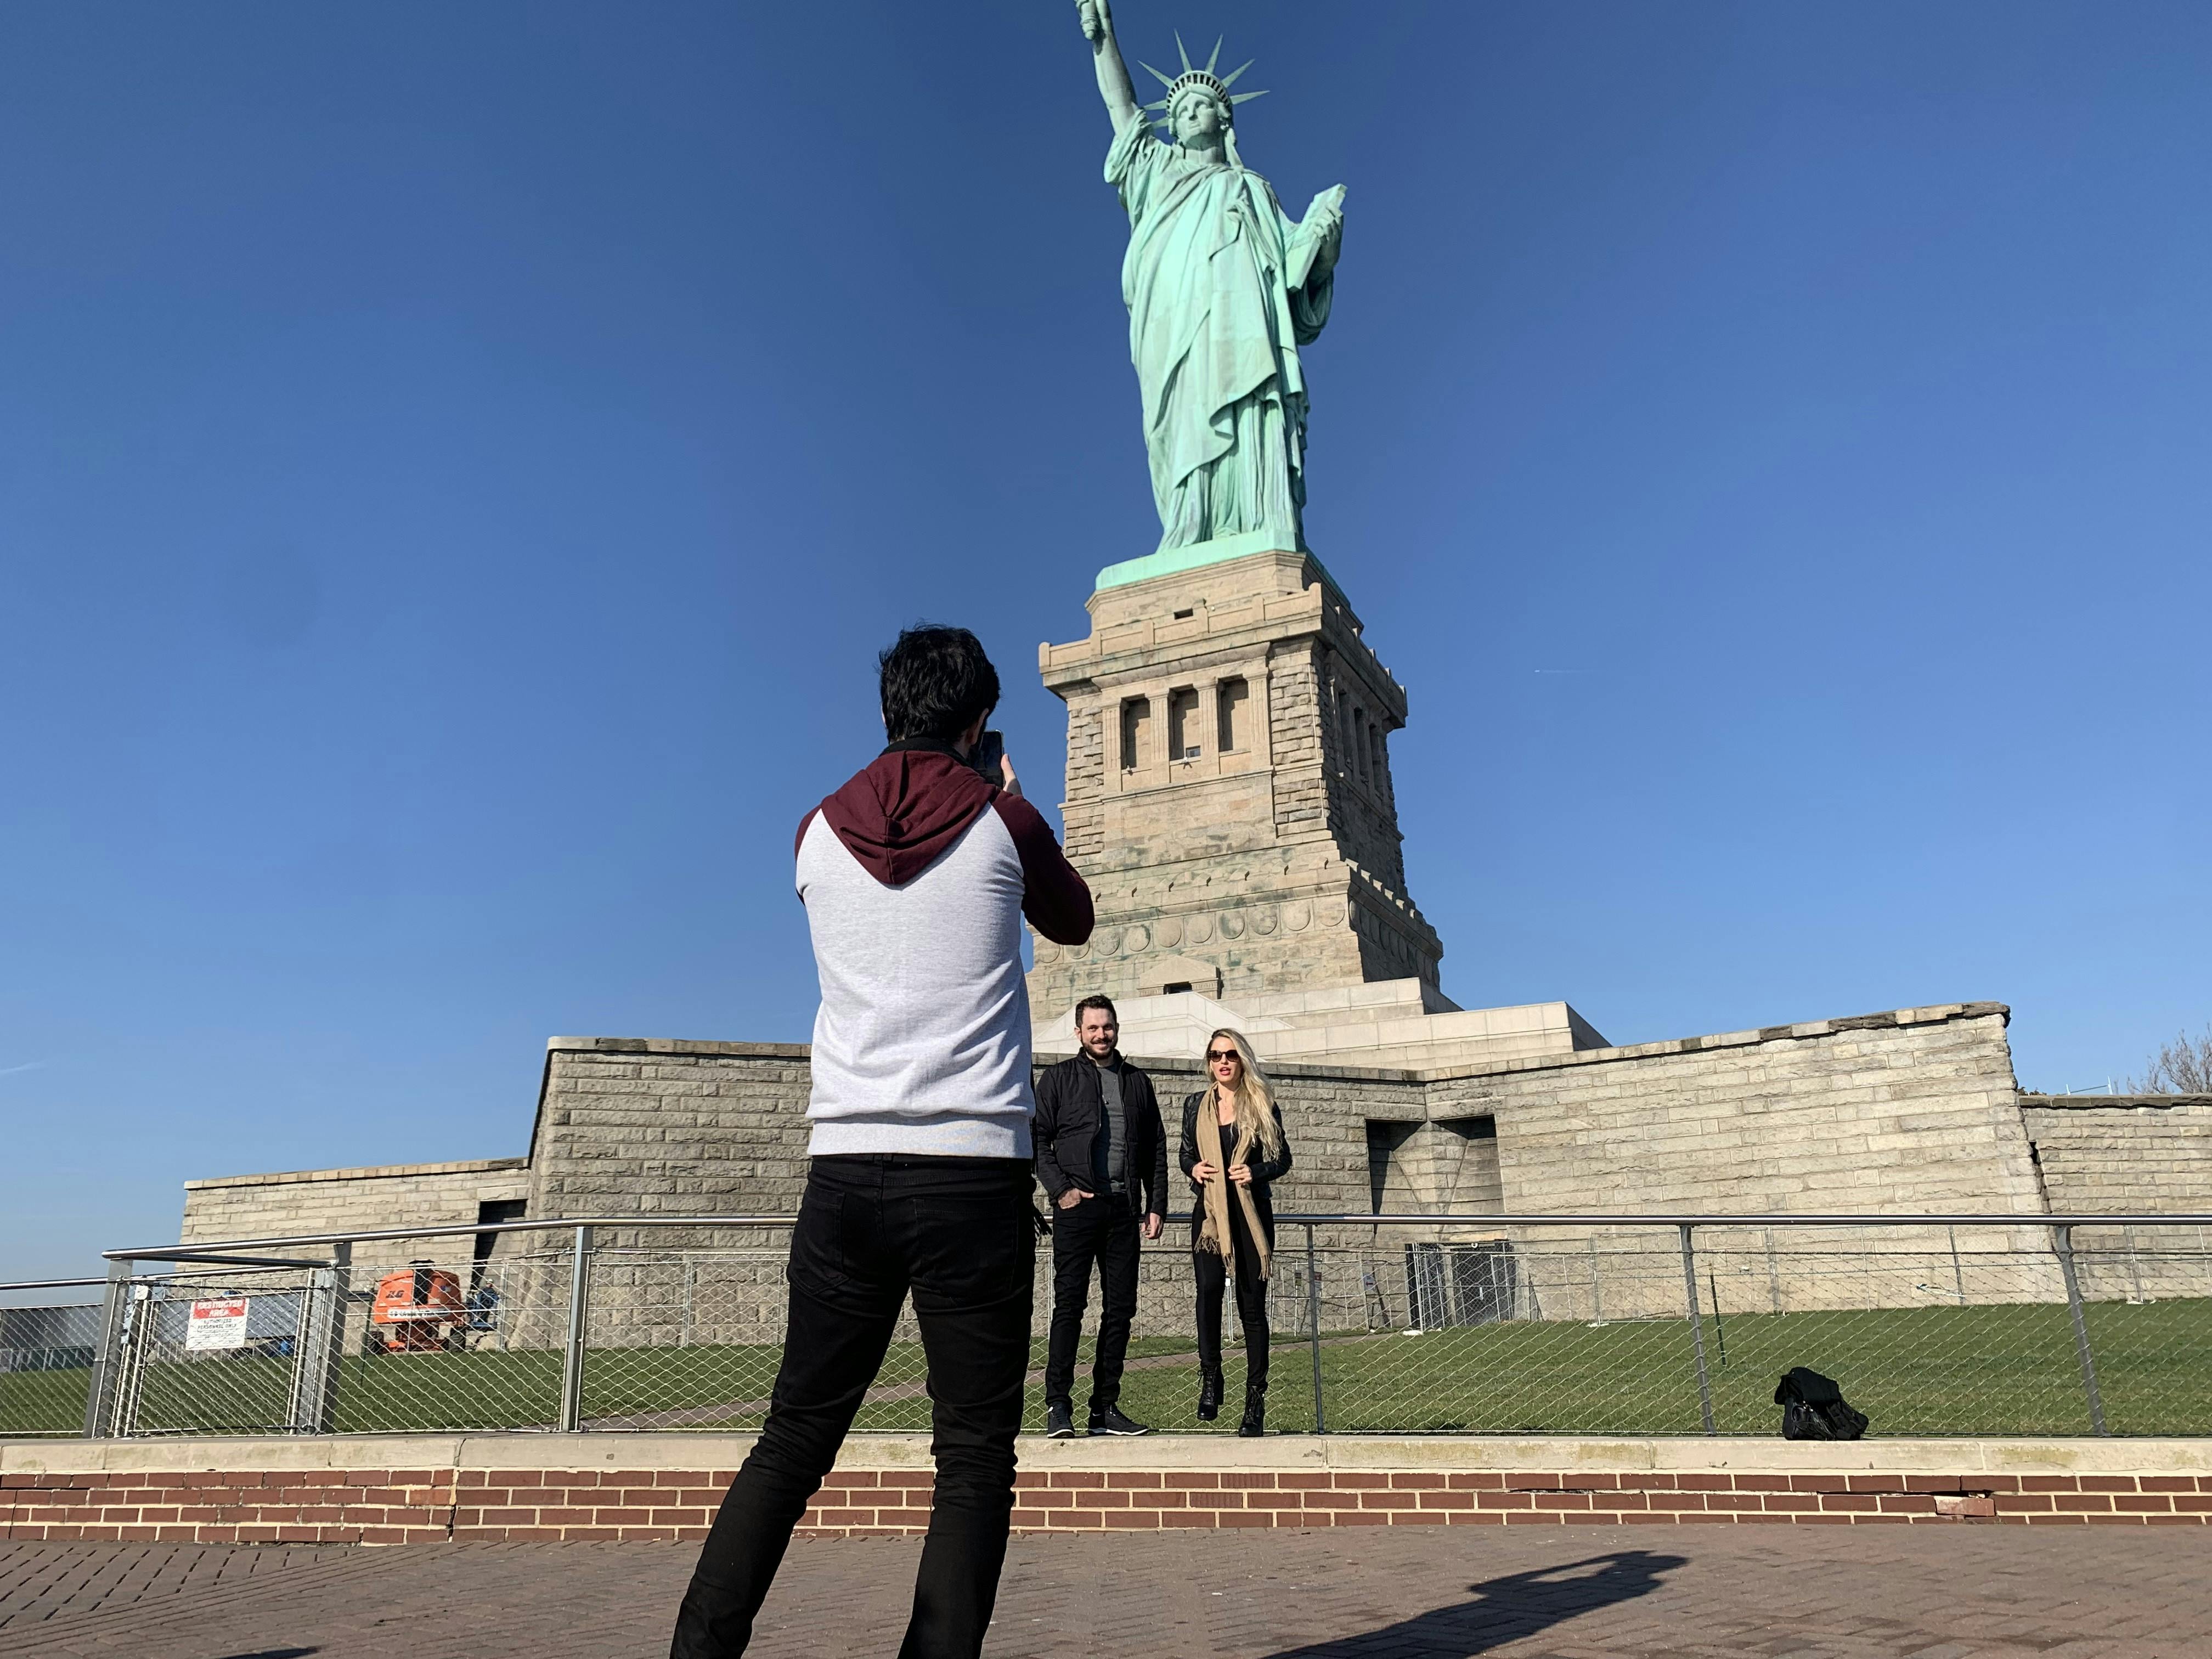 NYC walking tour statue of Liberty 1.jpeg